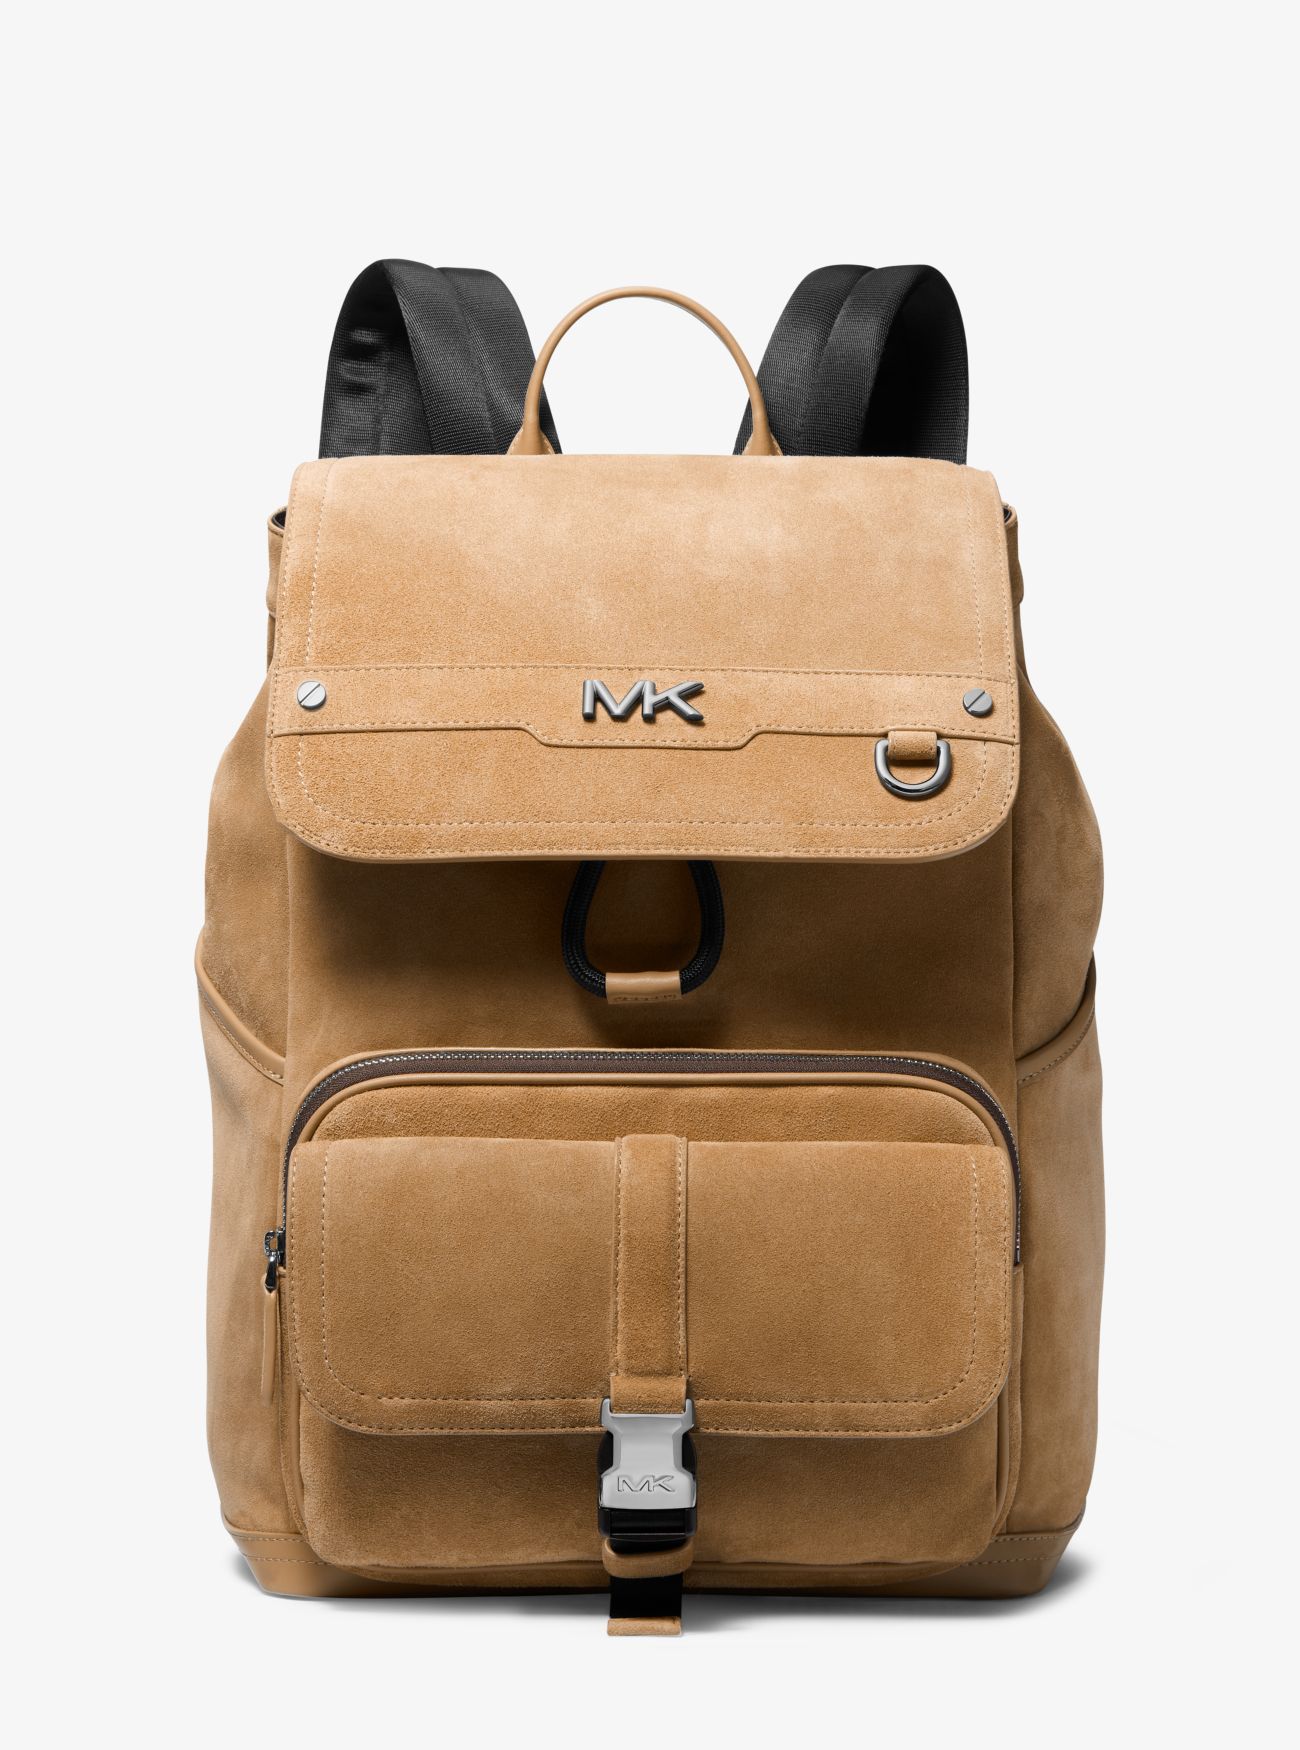 MK Varick Suede Backpack - Brown - Michael Kors